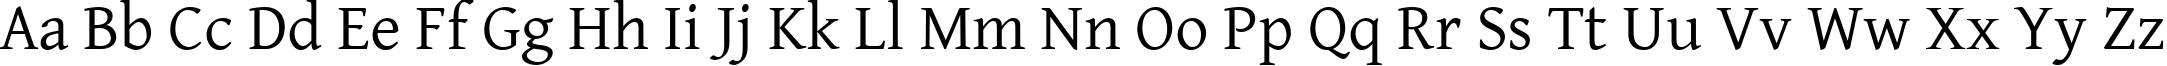 Пример написания английского алфавита шрифтом Gentium Basic